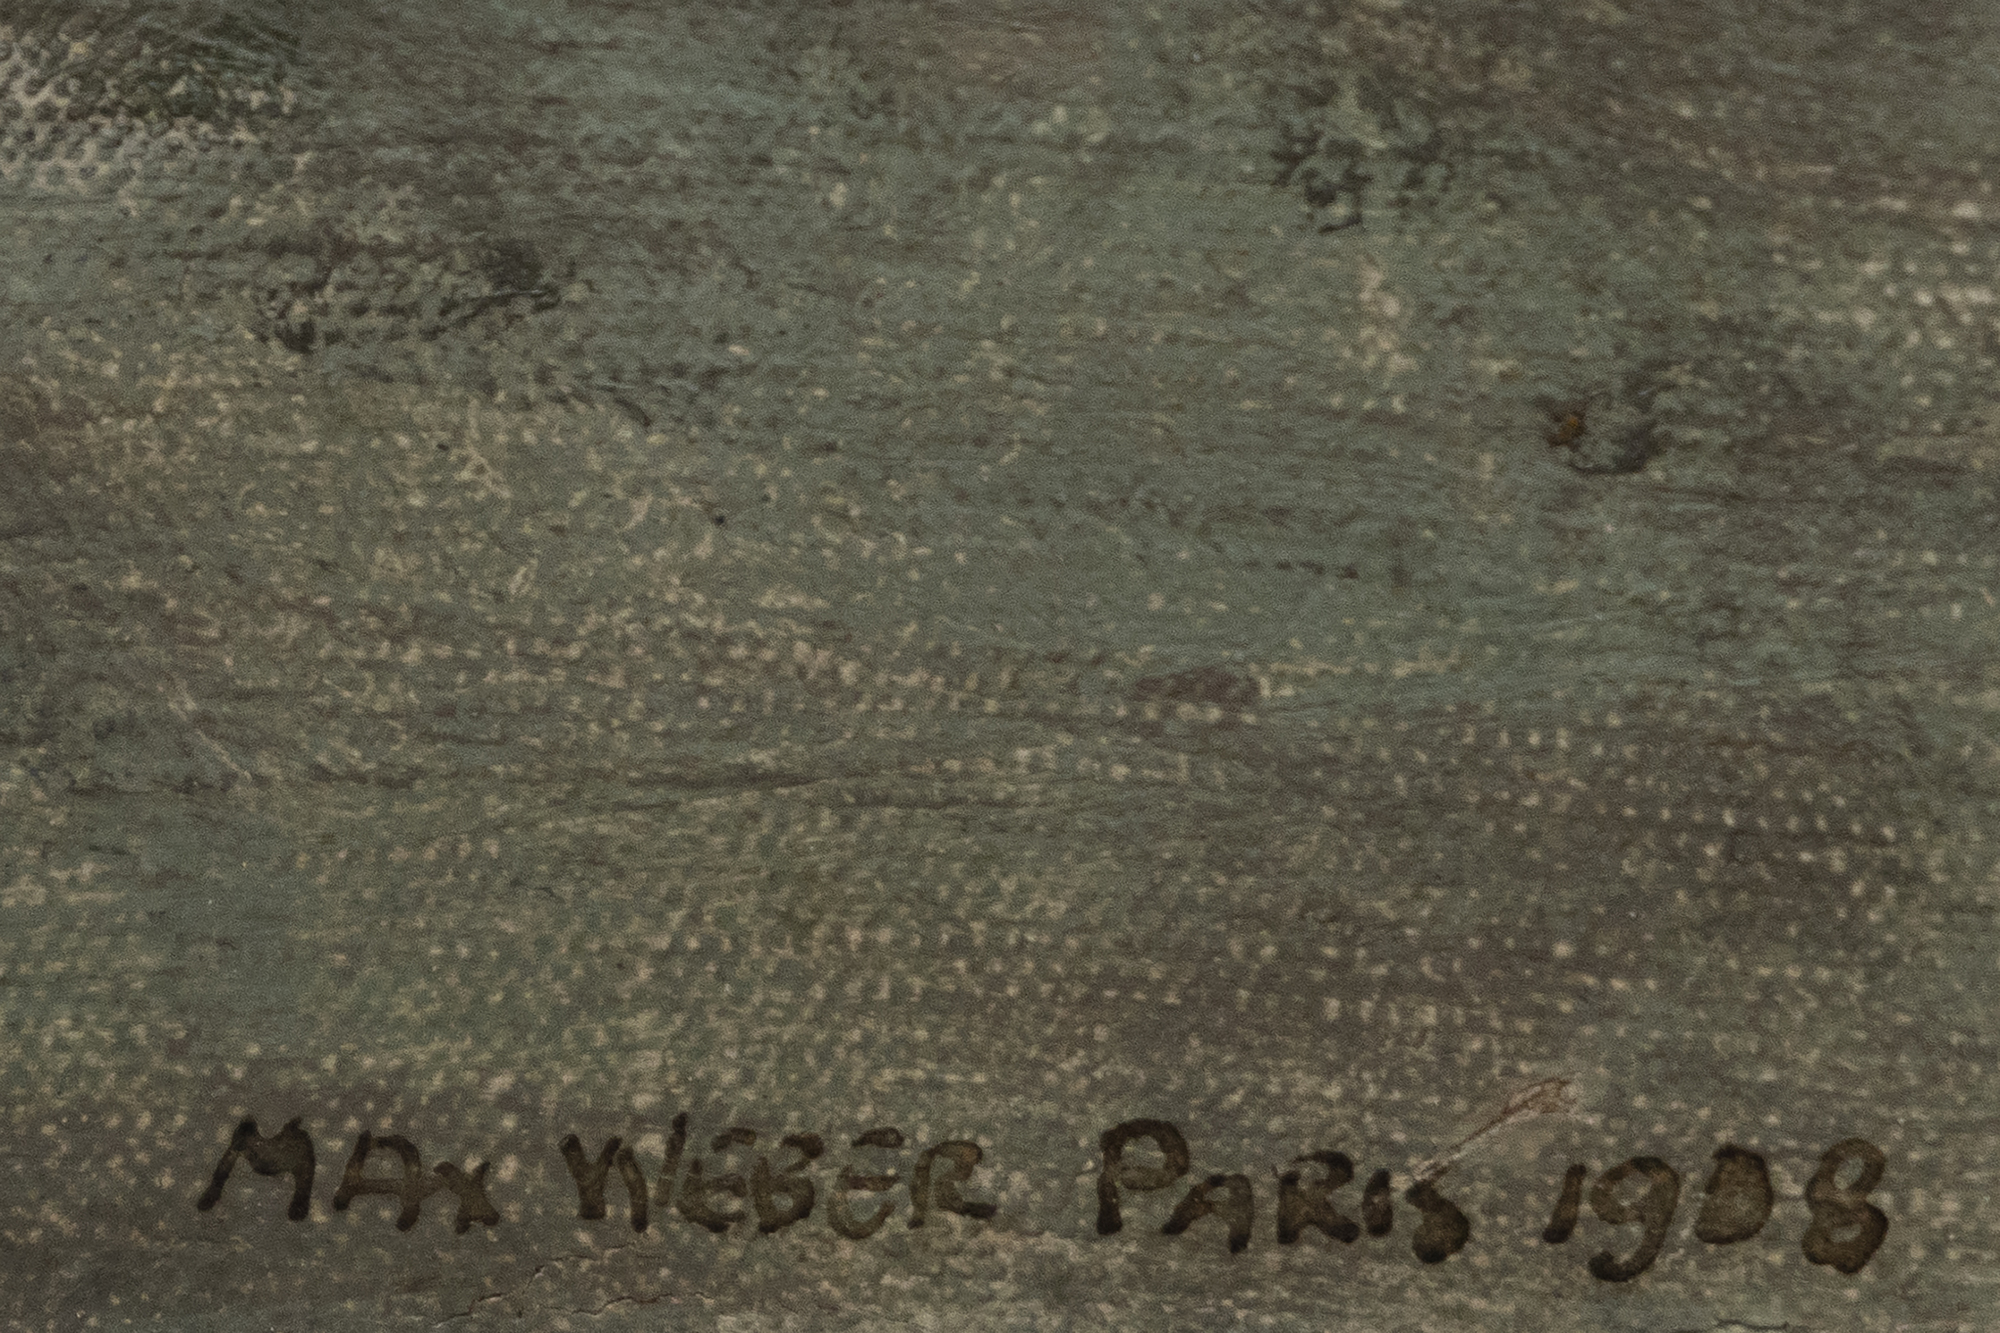 Max Weber se trasladó a París en 1905, cuando la ciudad era el epicentro de la innovación artística. Sus primeras obras demuestran la influencia contemporánea de la audaz paleta de colores del fauvismo y la representación fragmentada de la realidad del cubismo. Sin embargo, Weber no se limitó a imitar estos estilos; Los integró y reinterpretó para crear algo propio. La importancia de Weber radica no sólo en sus obras abstractas, sino también en su papel como conducto de las ideas modernistas. Weber desempeñó un papel crucial en el diálogo transatlántico que ayudó a dar forma al curso del arte estadounidense en el siglo XX. Sus representaciones de figuras femeninas muestran una síntesis de lo abstracto y lo representativo, capturando la esencia de sus temas al tiempo que rompe con las obras figurativas tradicionales.